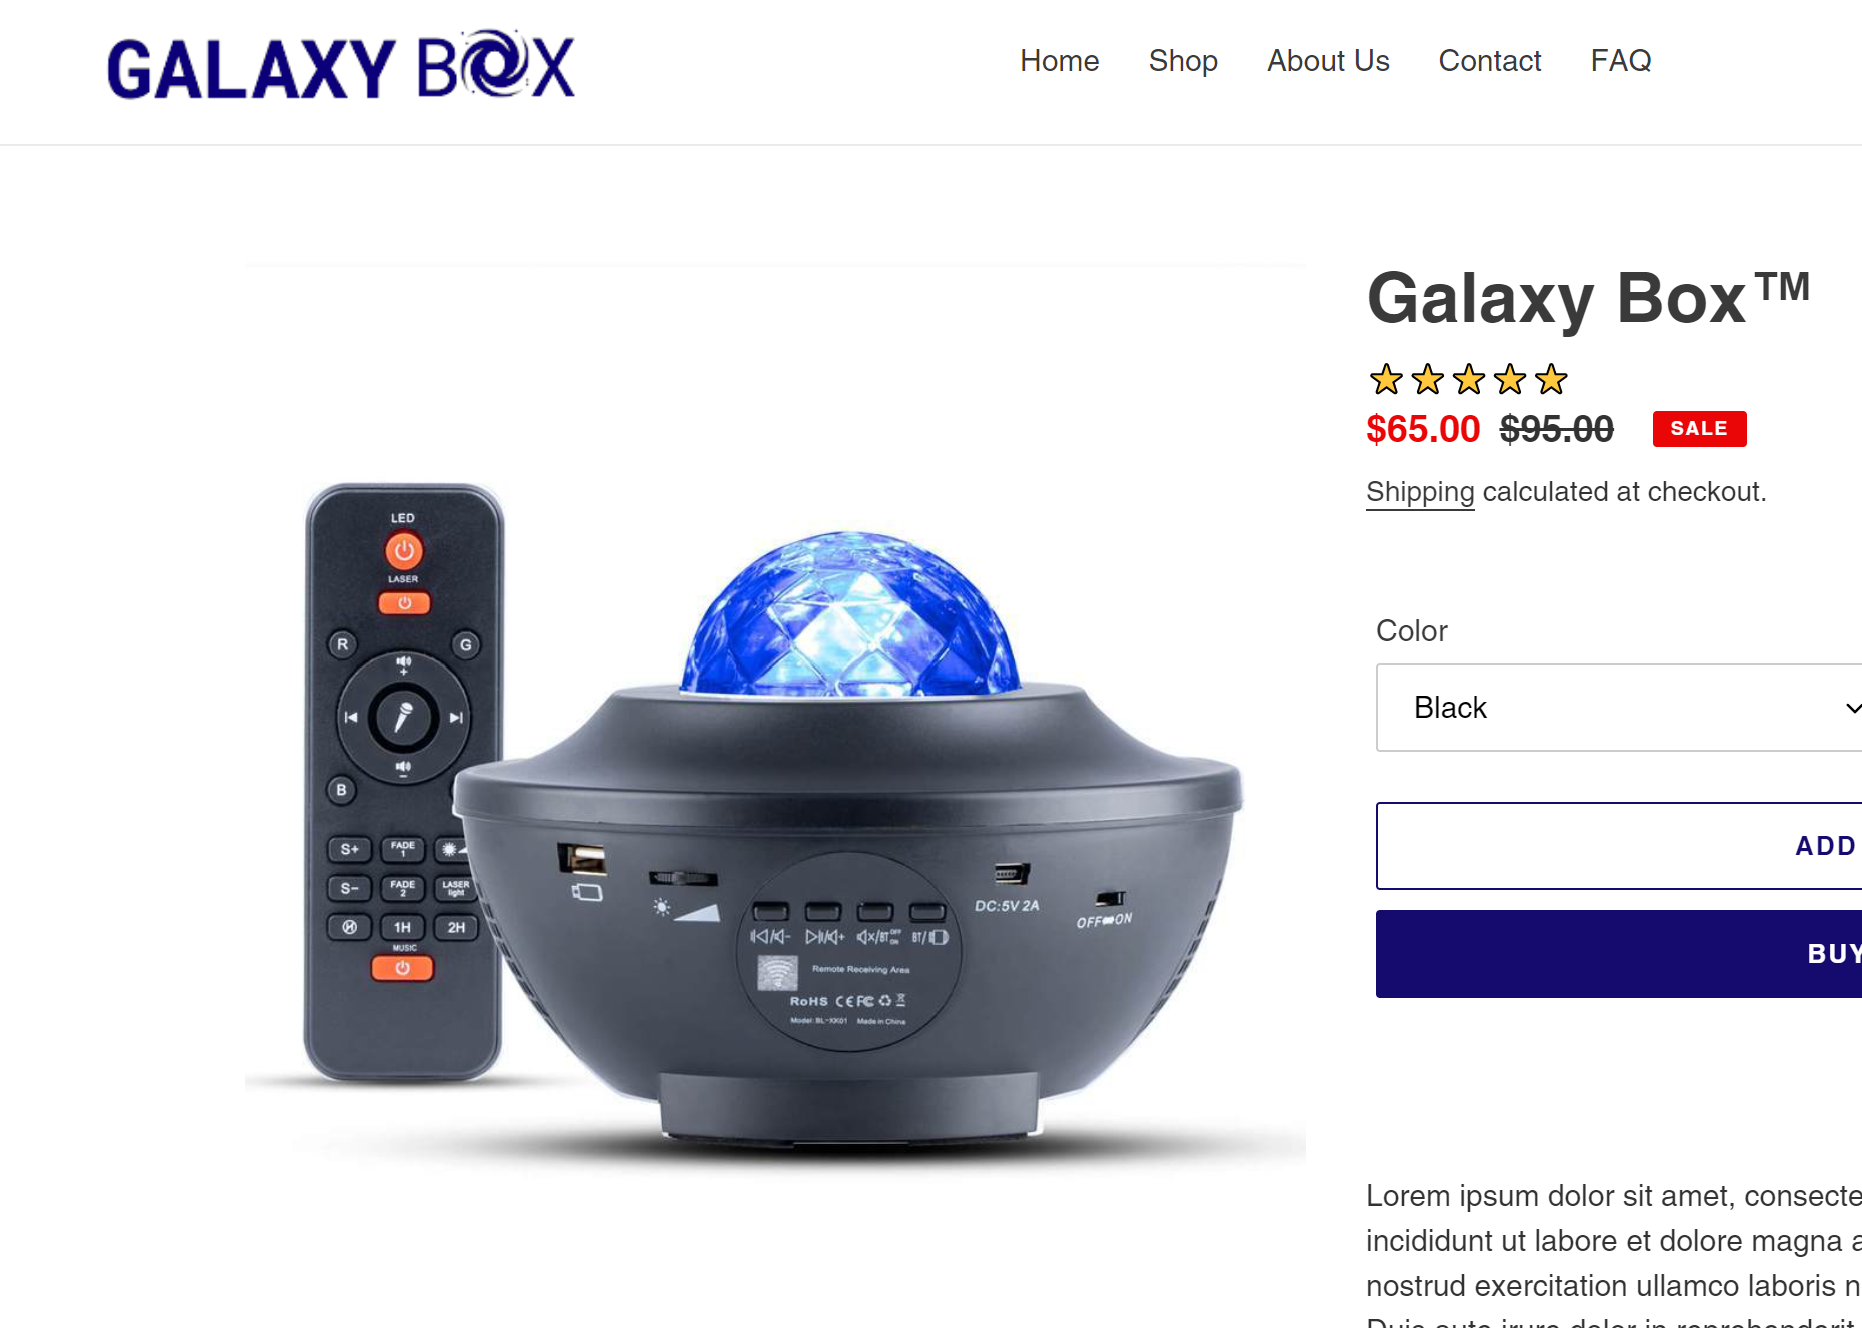 Galaxy Box product page